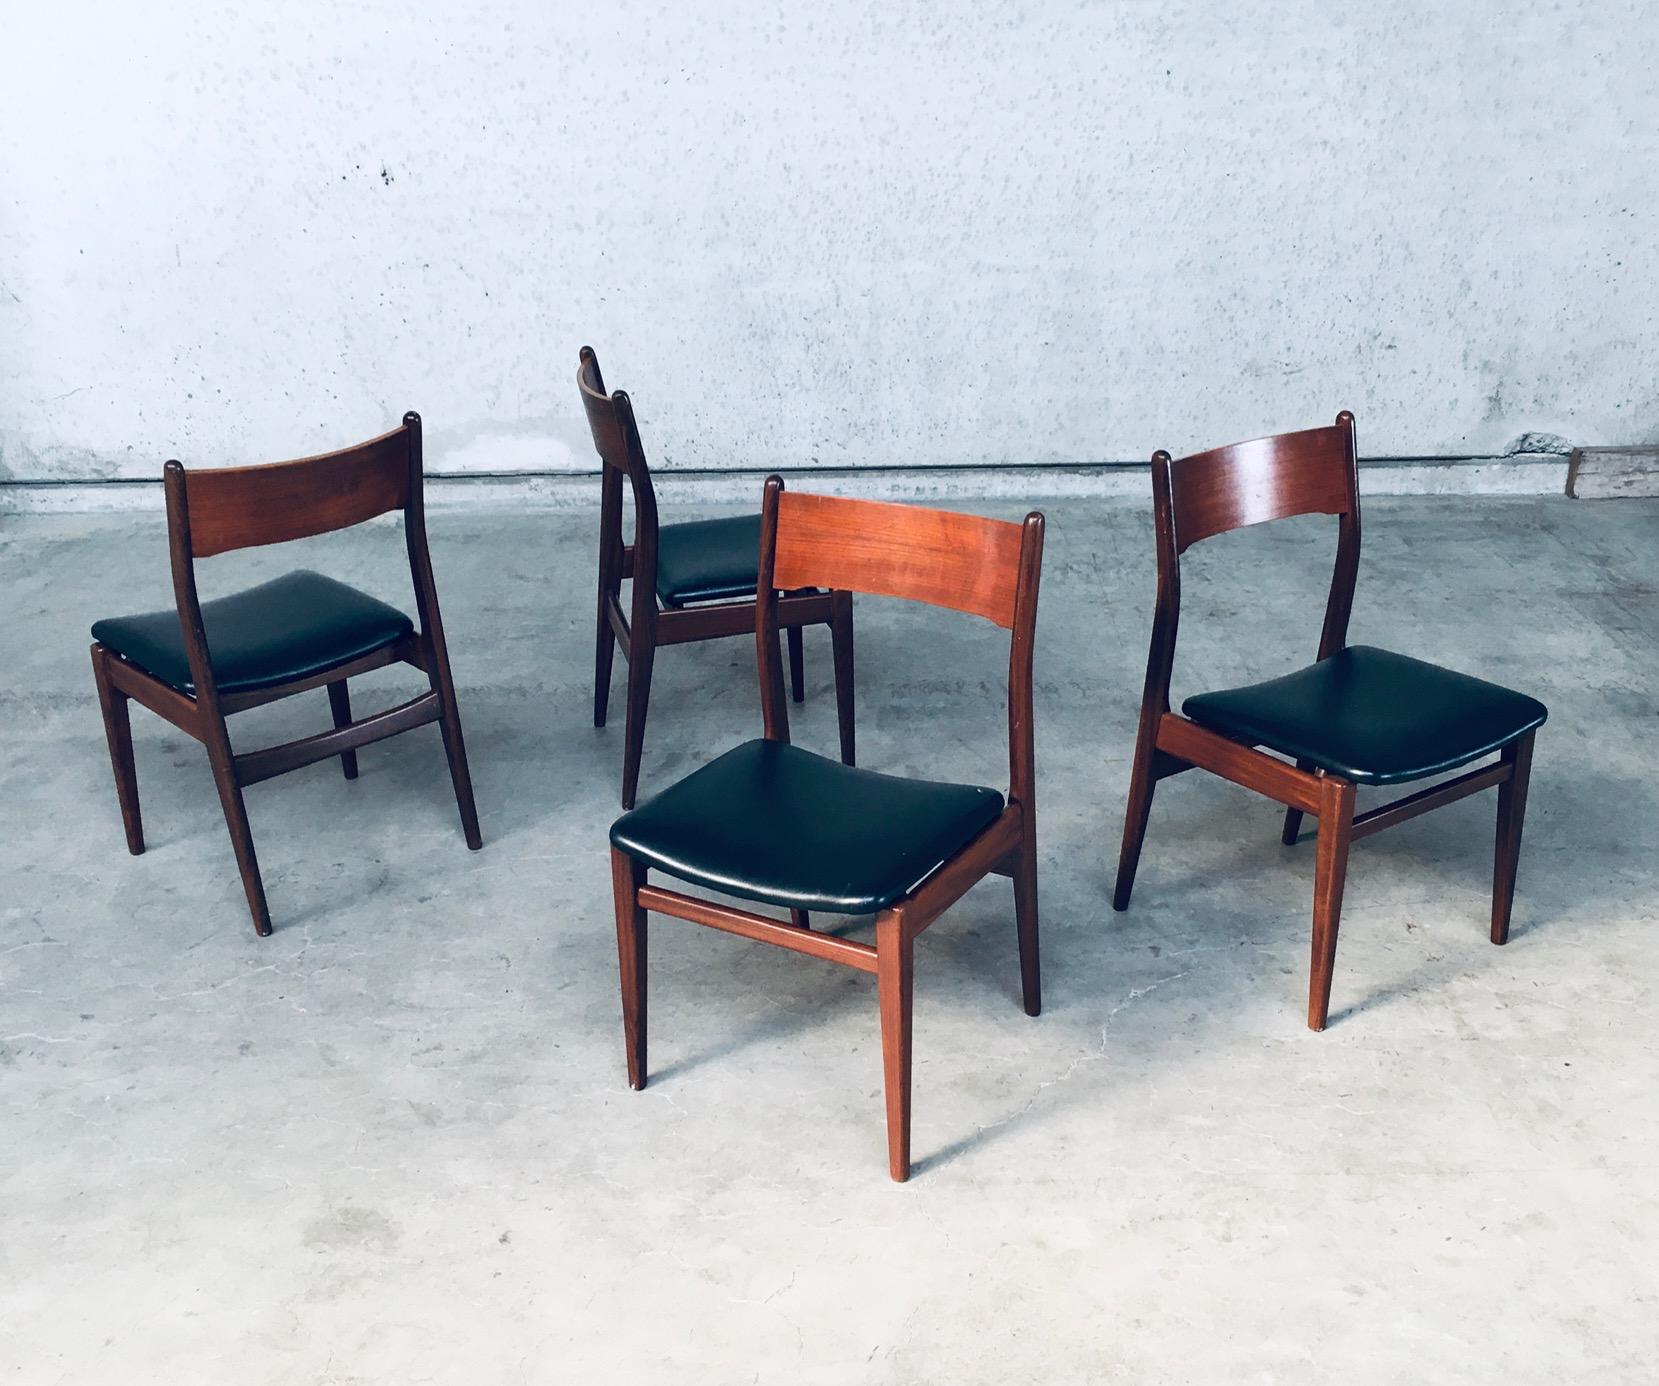 Vintage Mid-Century Modern Scandinavian Design Chaise de salle à manger en teck, ensemble de 4. Fabriqué au Danemark dans les années 1960. Cadre en bois de teck, dossier en contreplaqué cintré et siège recouvert de similicuir noir. Chaises bien